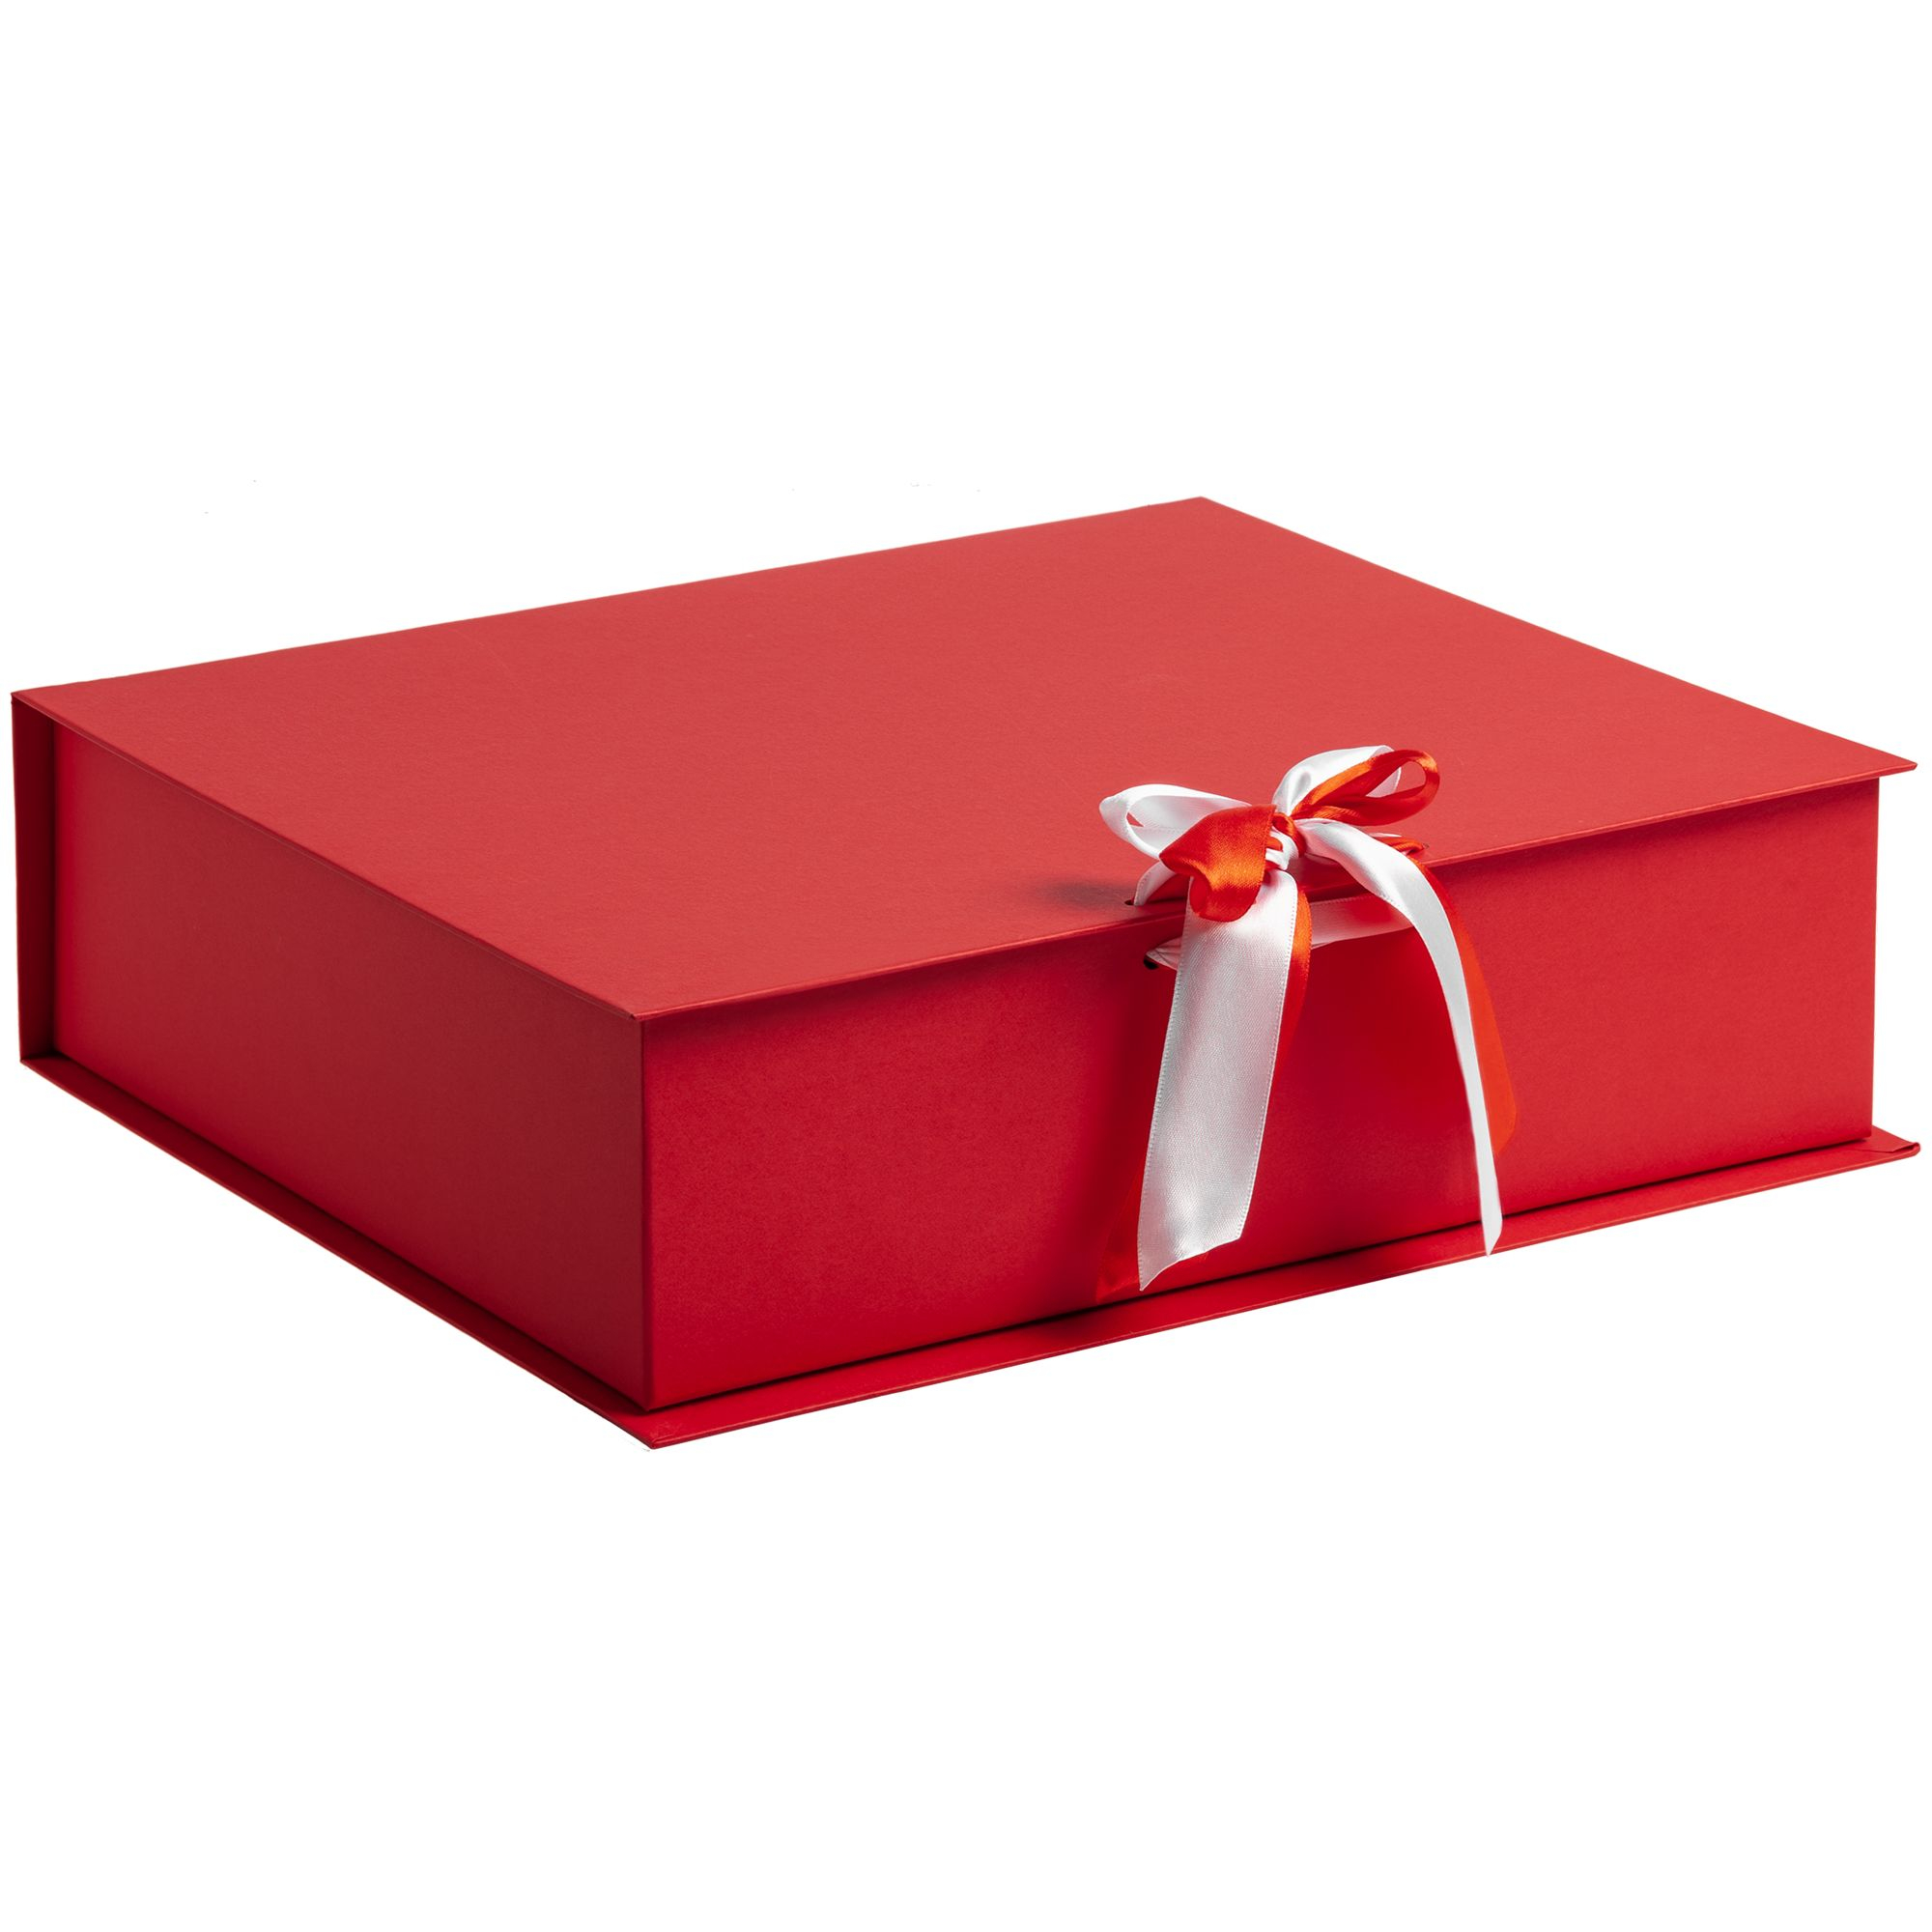 Купить коробки в иваново. Подарочная коробка. Коробка для подарка. Красивая подарочная коробка. Красивые коробочки для подарков.